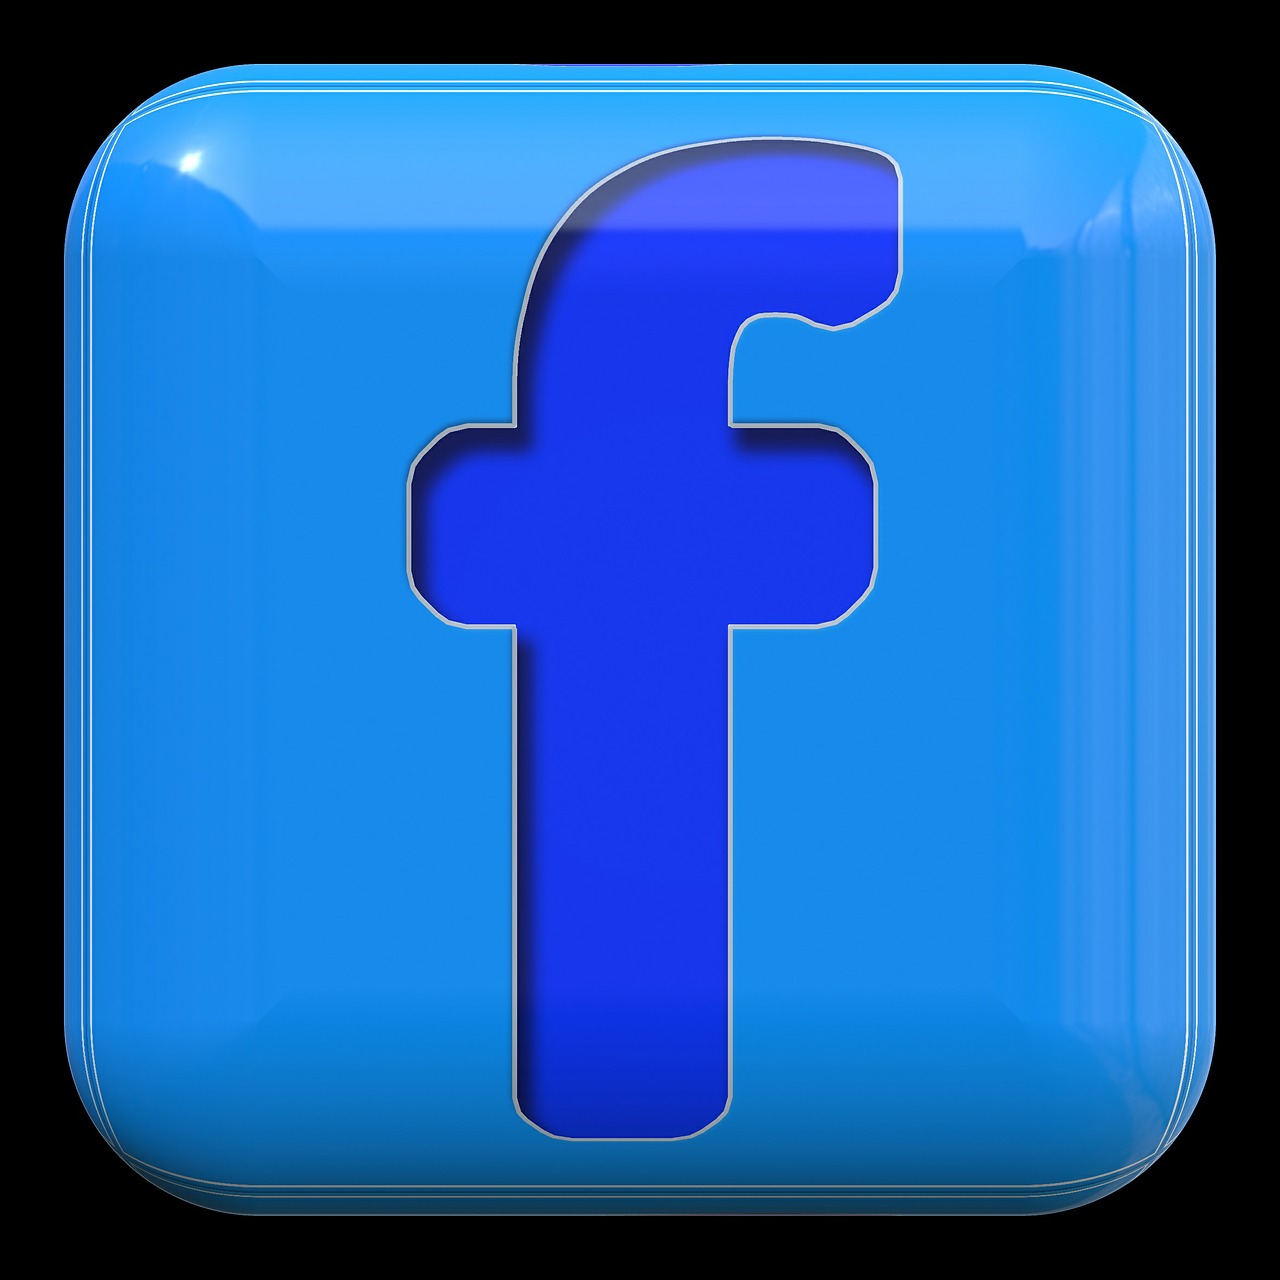 - 创新技术，深度个性化：FacebookBM的独特功能为你提供精准推荐和个人定制服务